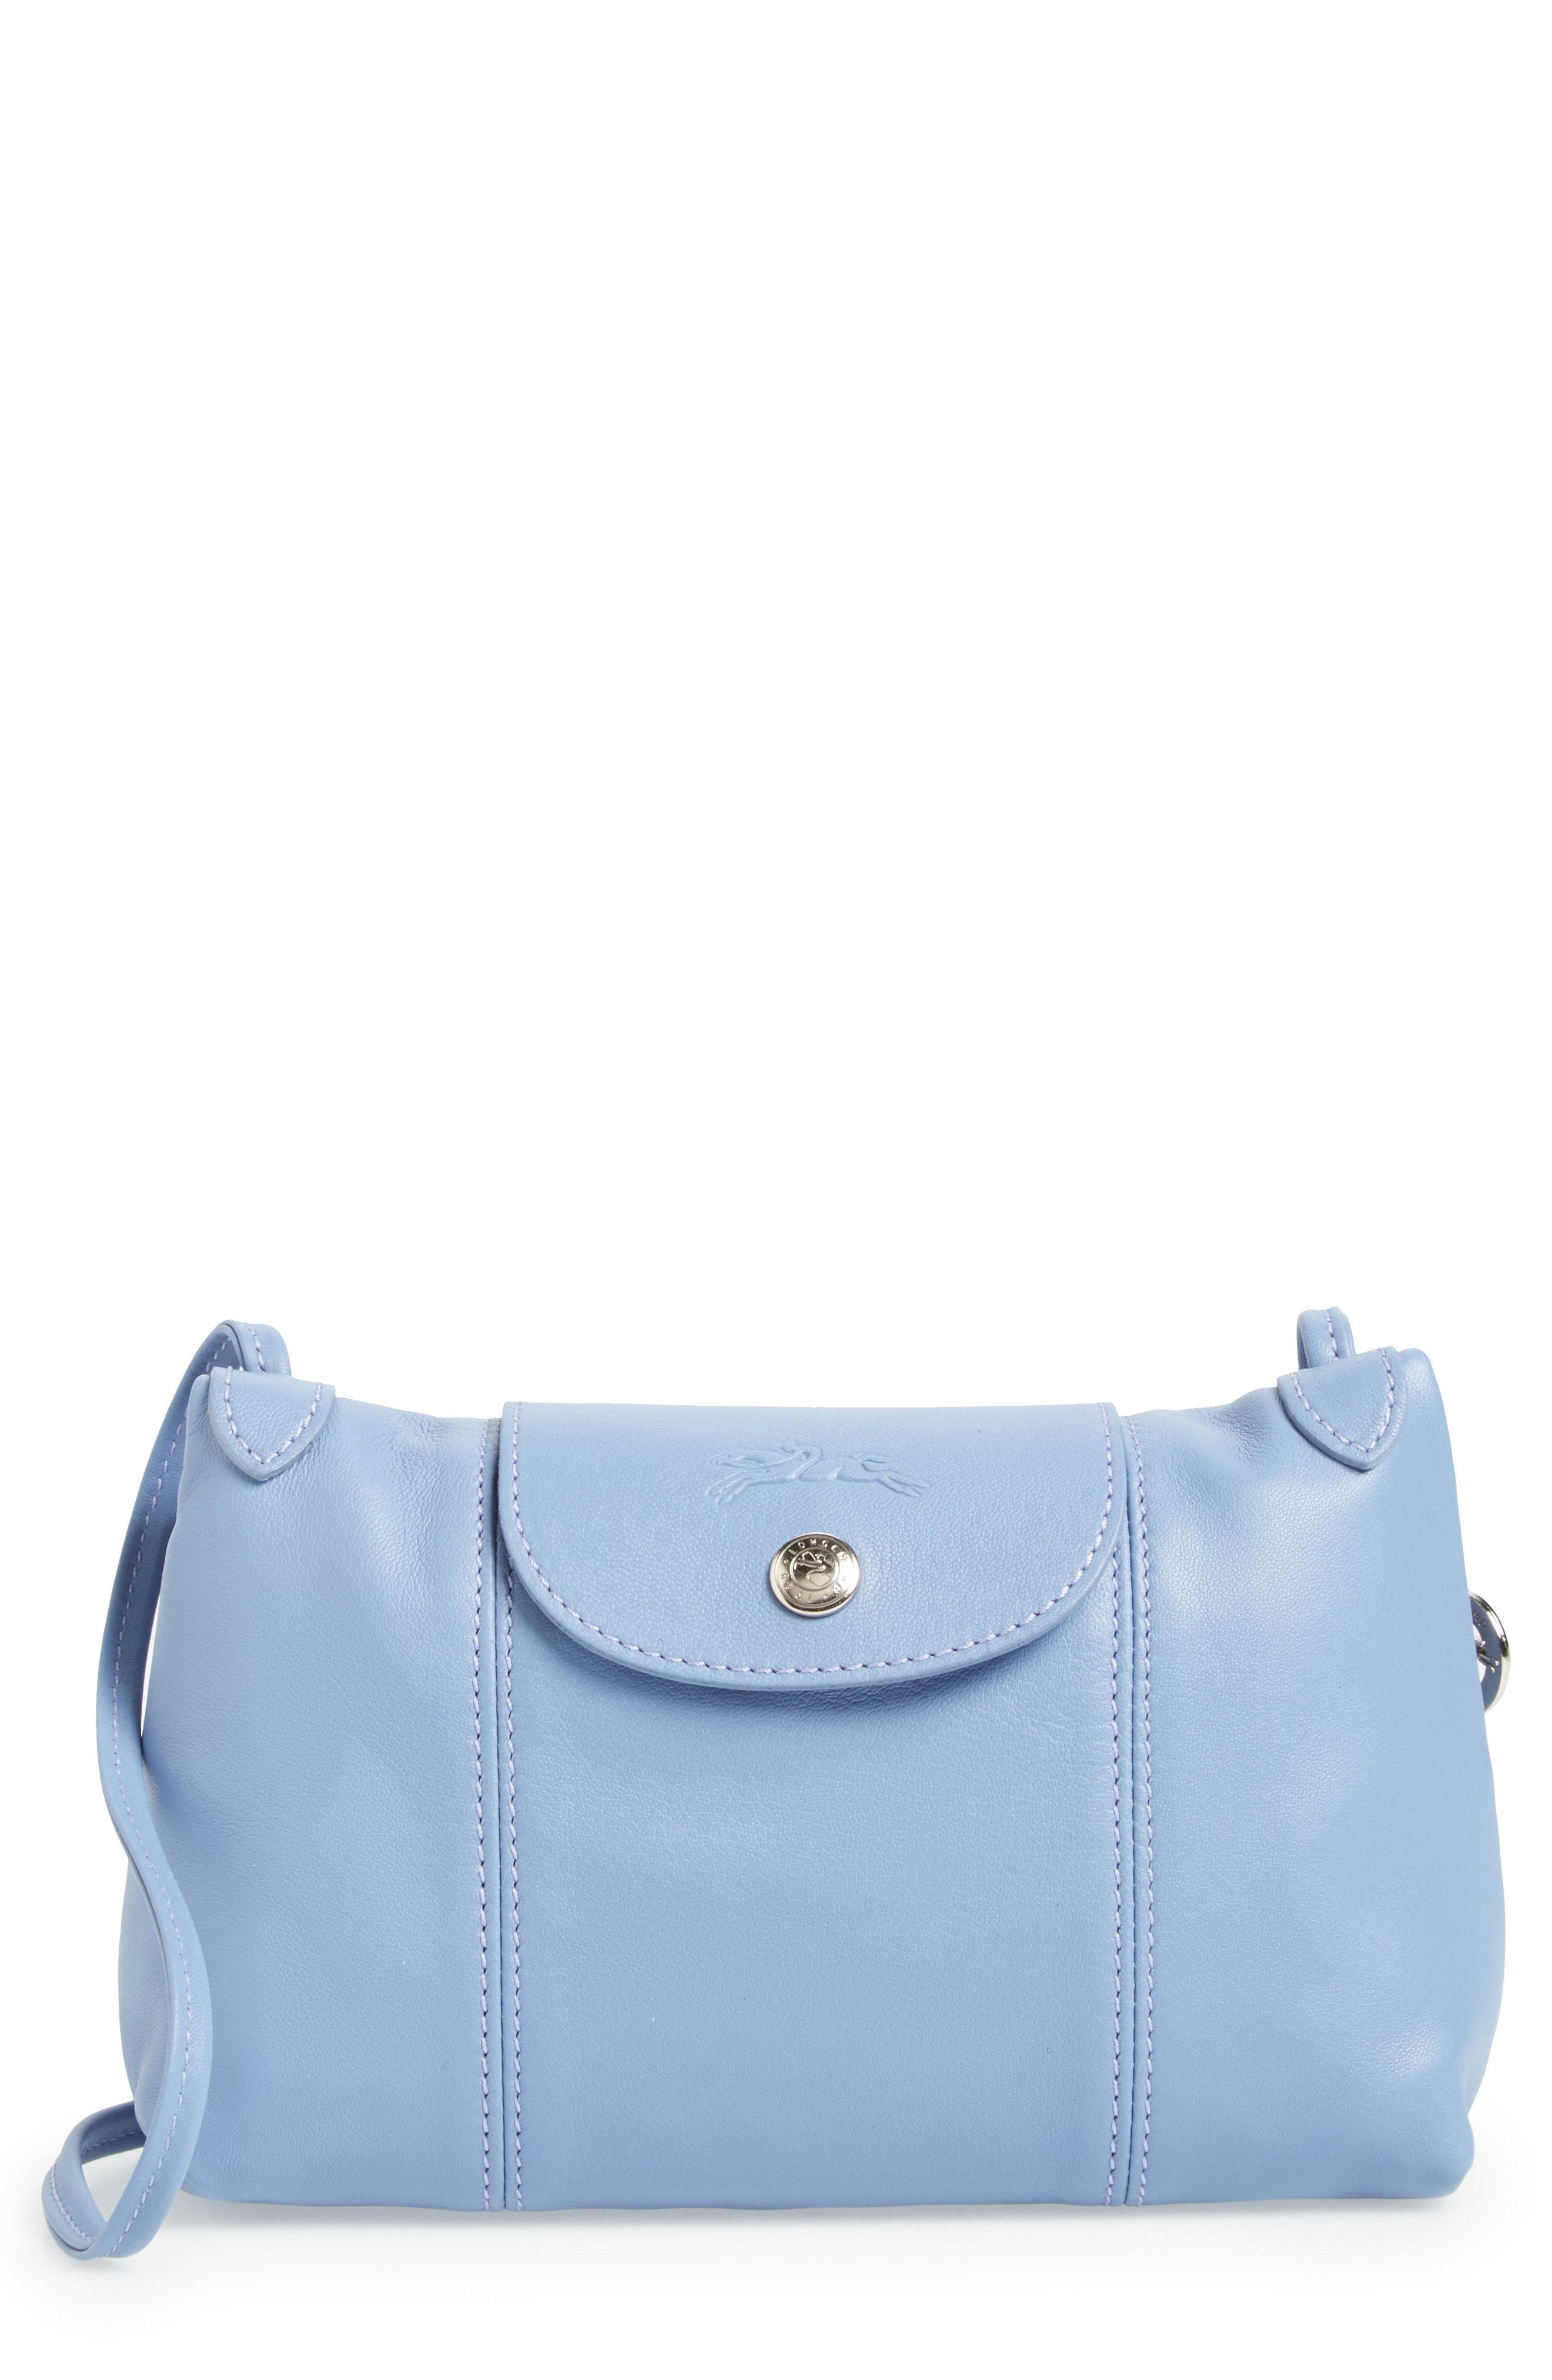 light blue longchamp bag